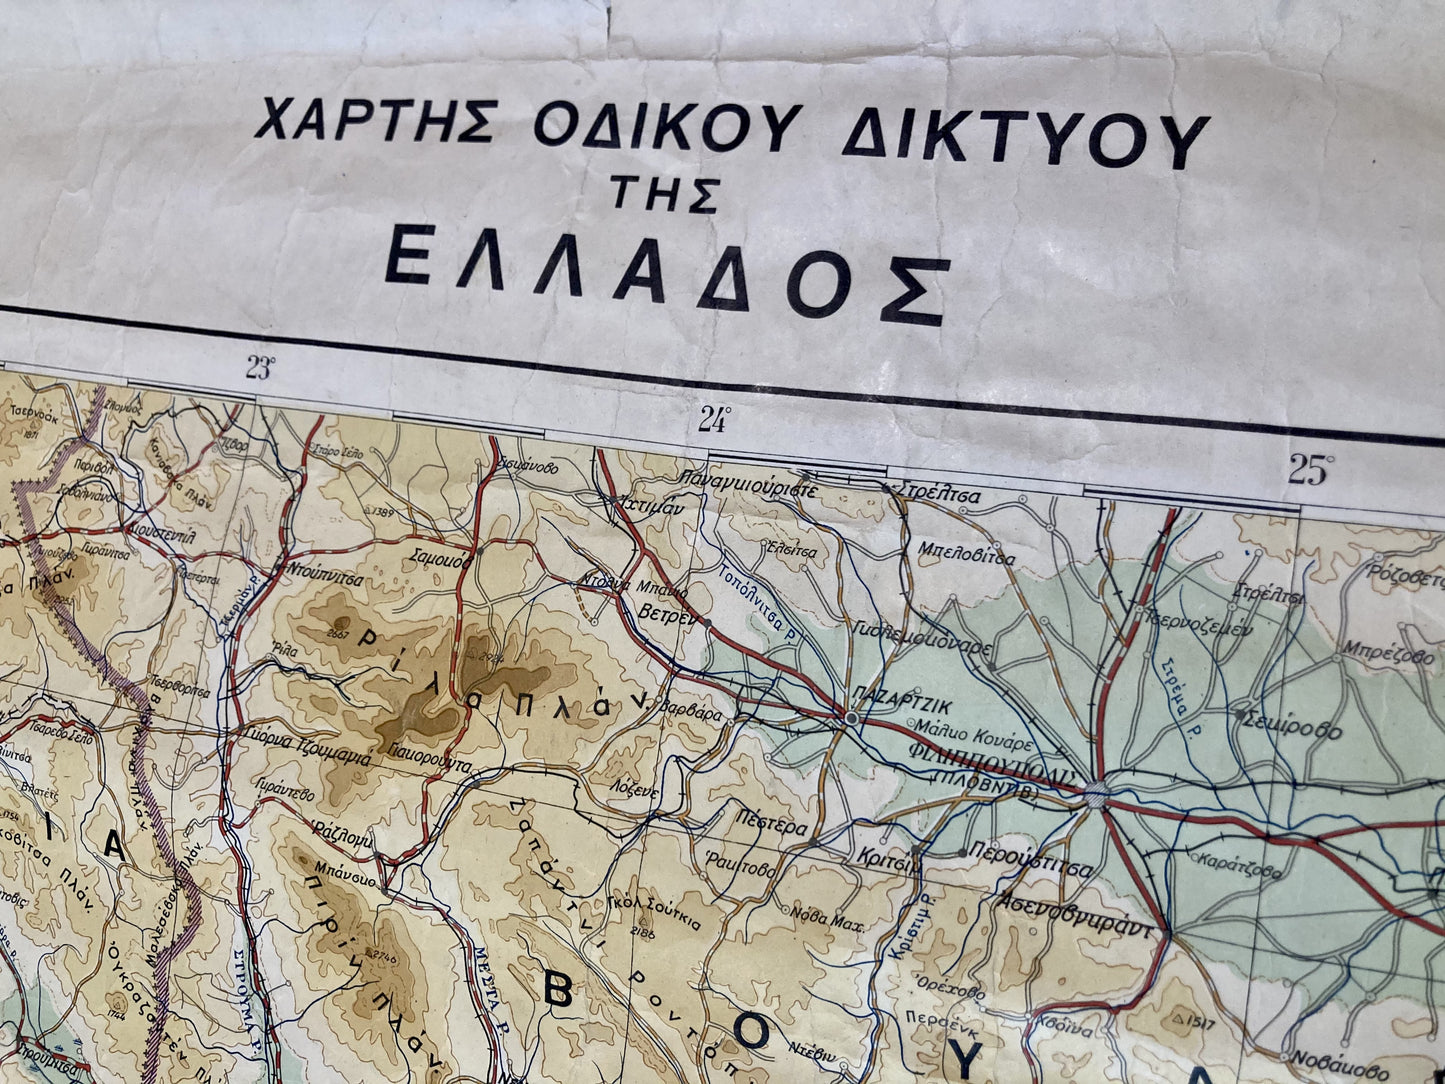 Titre de la grande carte ancienne de la Grèce